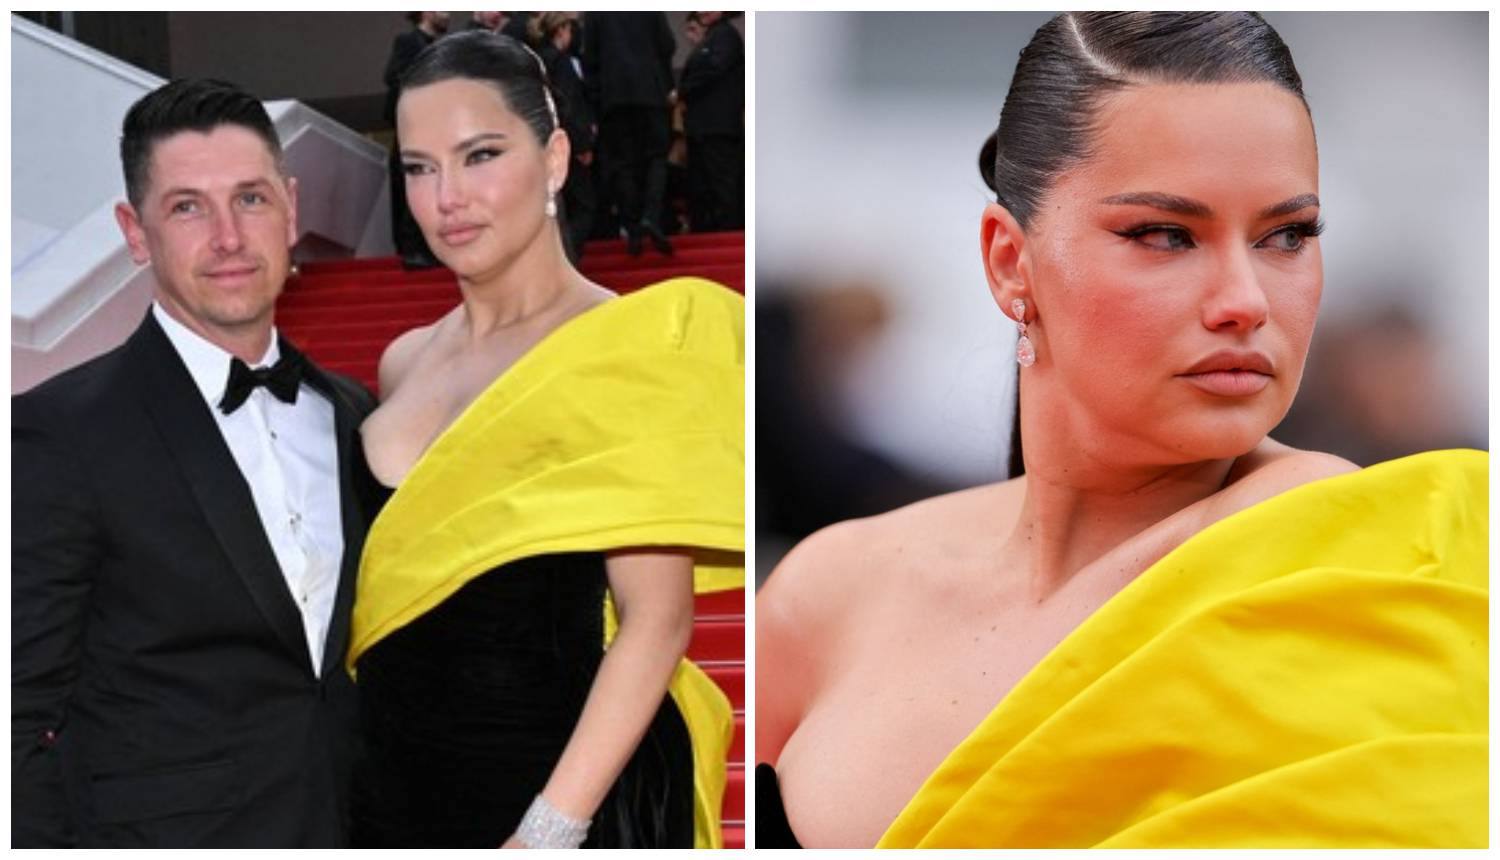 Lice Adriane Lime iznenadilo sve prisutne u Cannesu: 'Prihvaćam se, moram trenirati svaki dan'